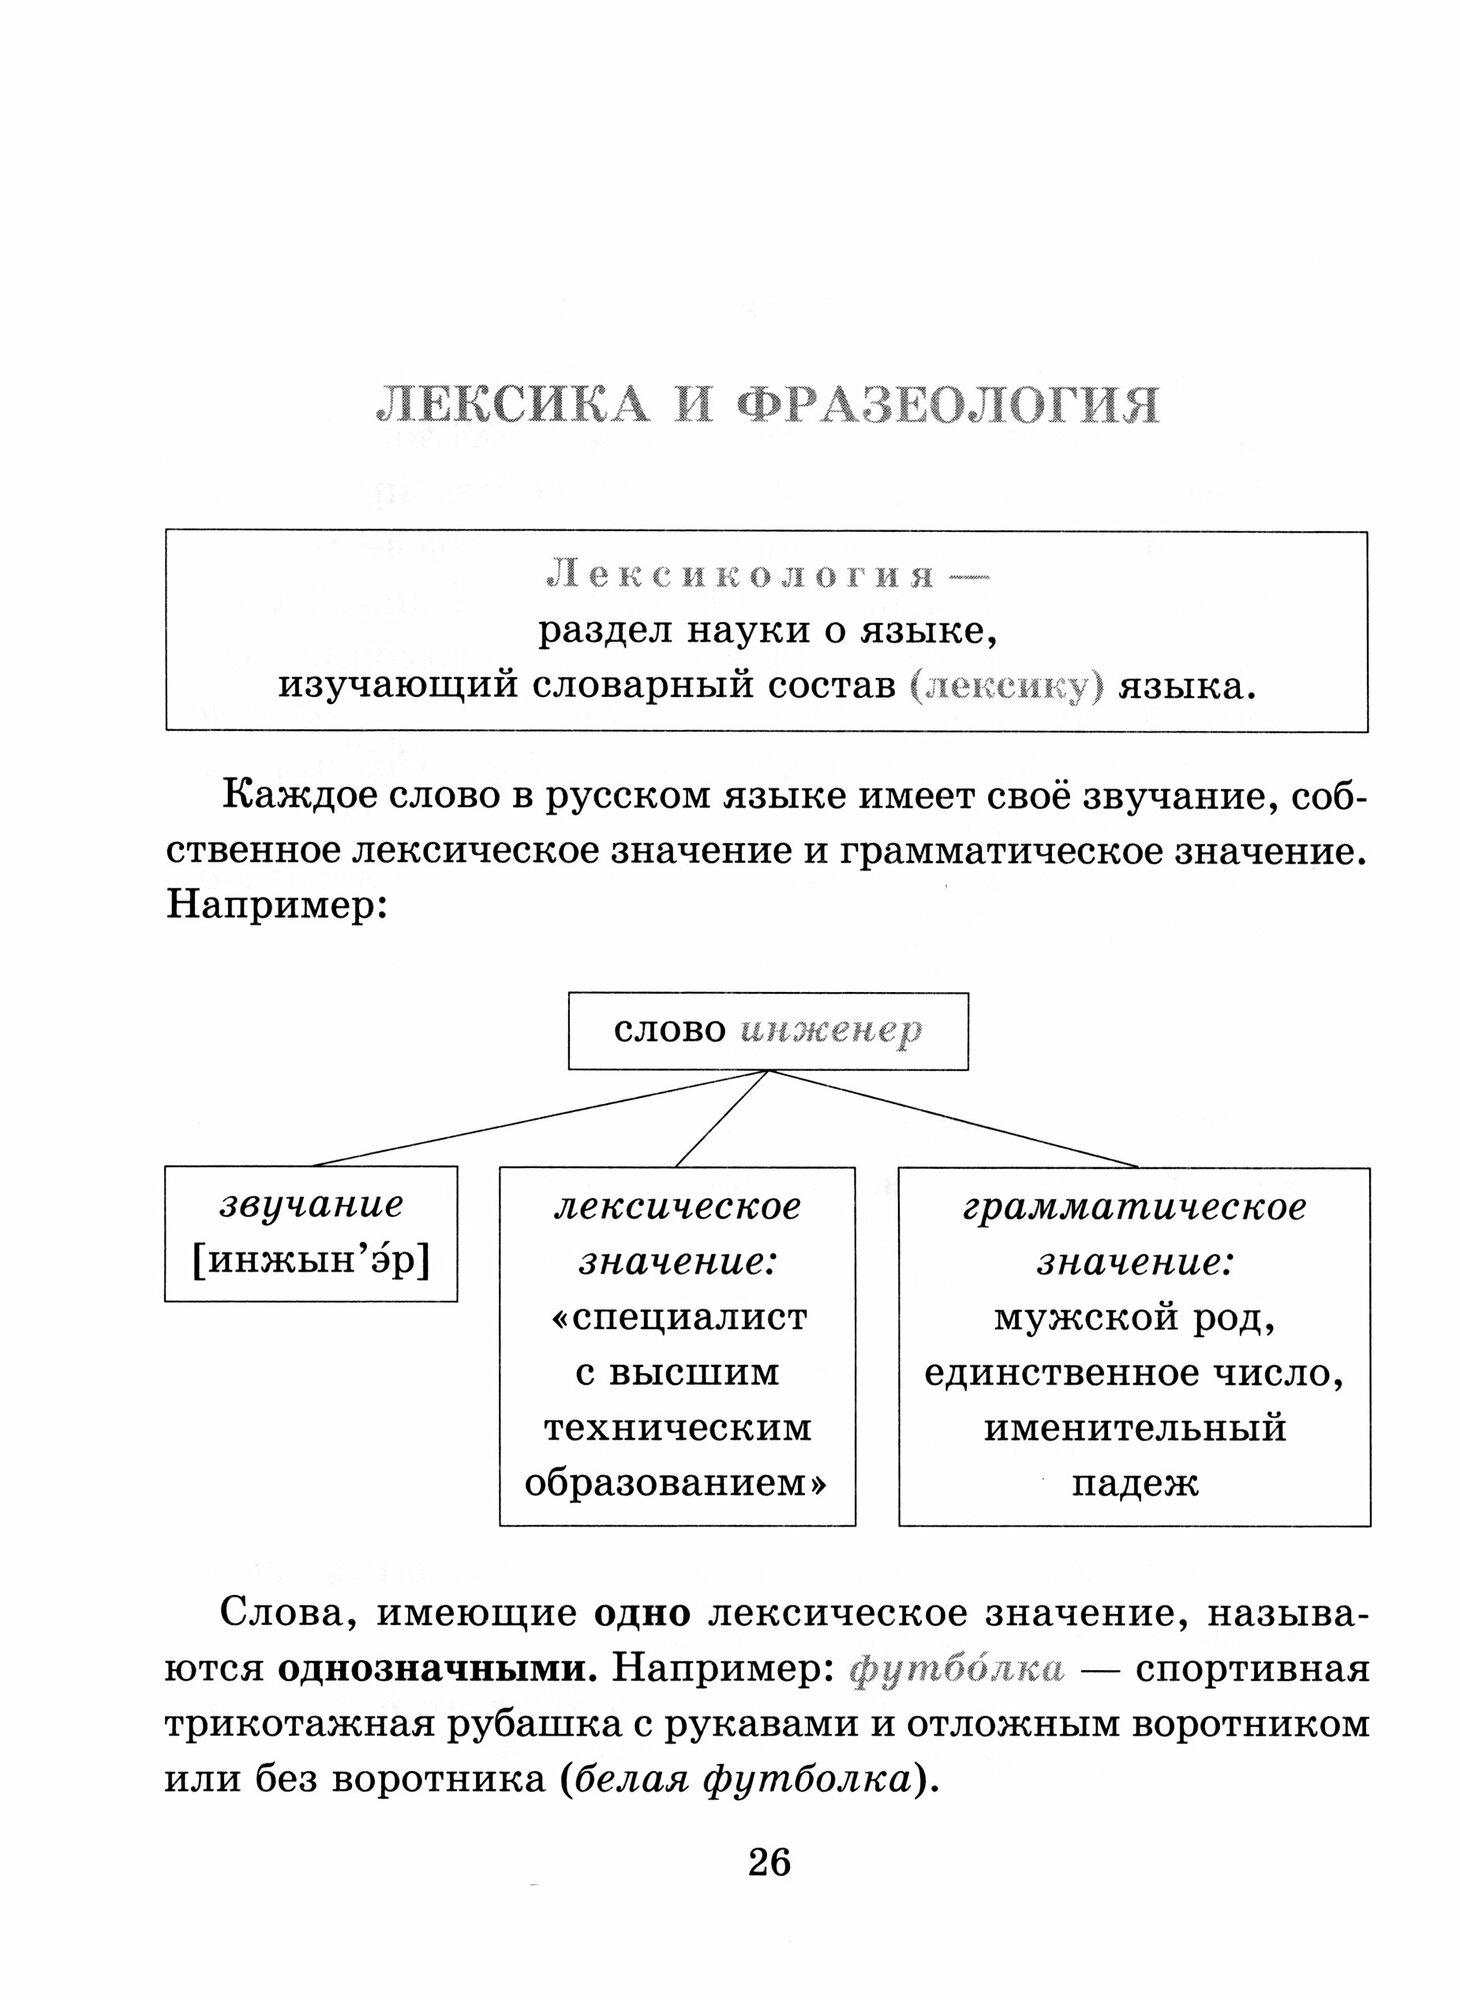 Справочник по русскому языку для учащихся 5-9 классов - фото №6